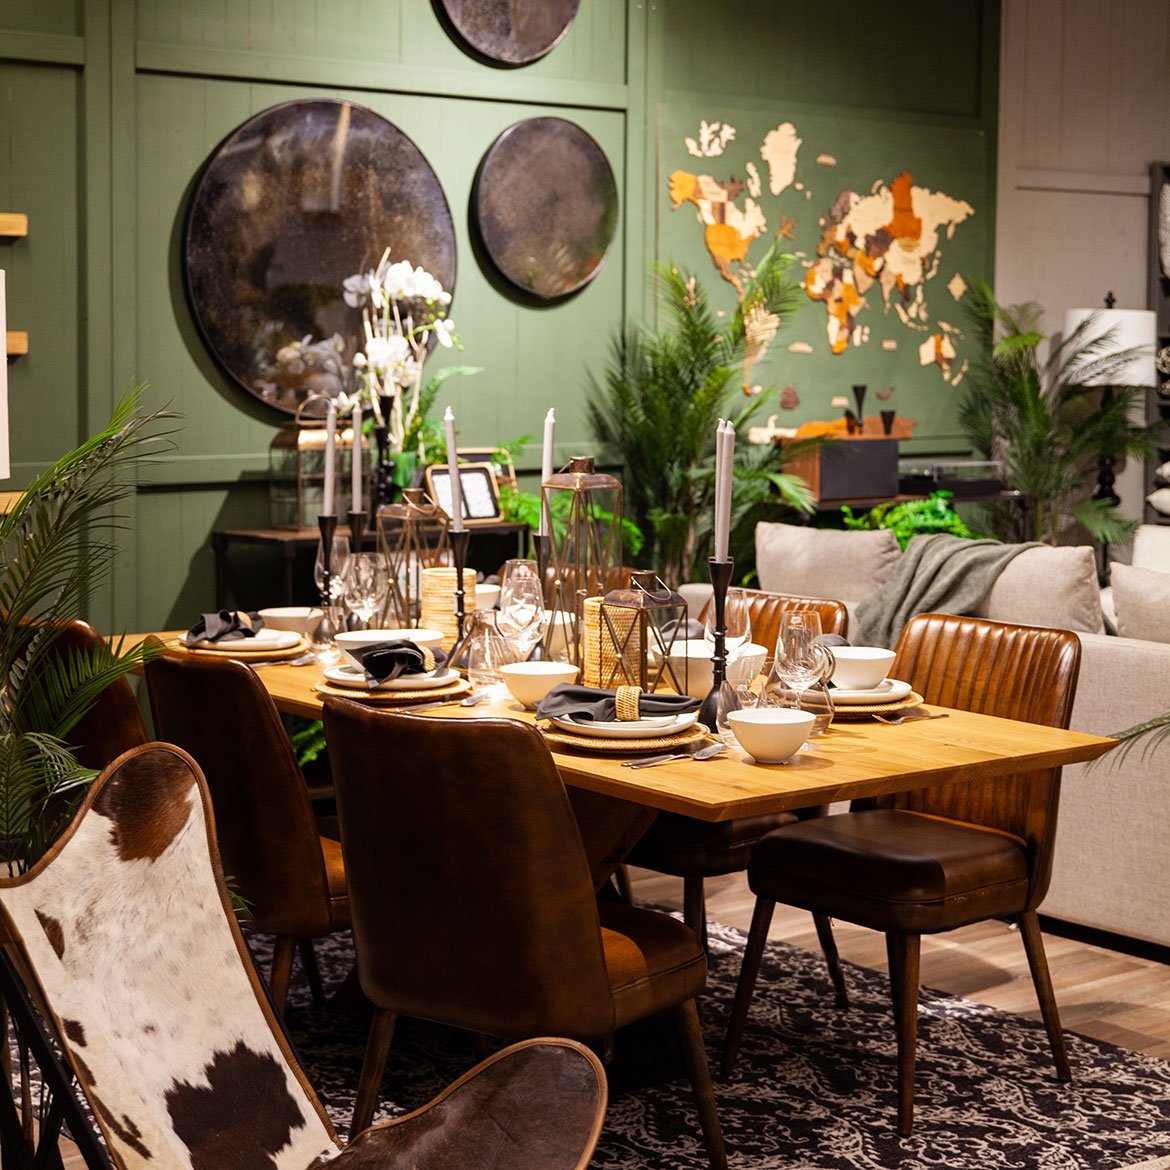 Espace repas - tables en bois noble, personnalisables, chaises et fauteuils de repas - Schilliger